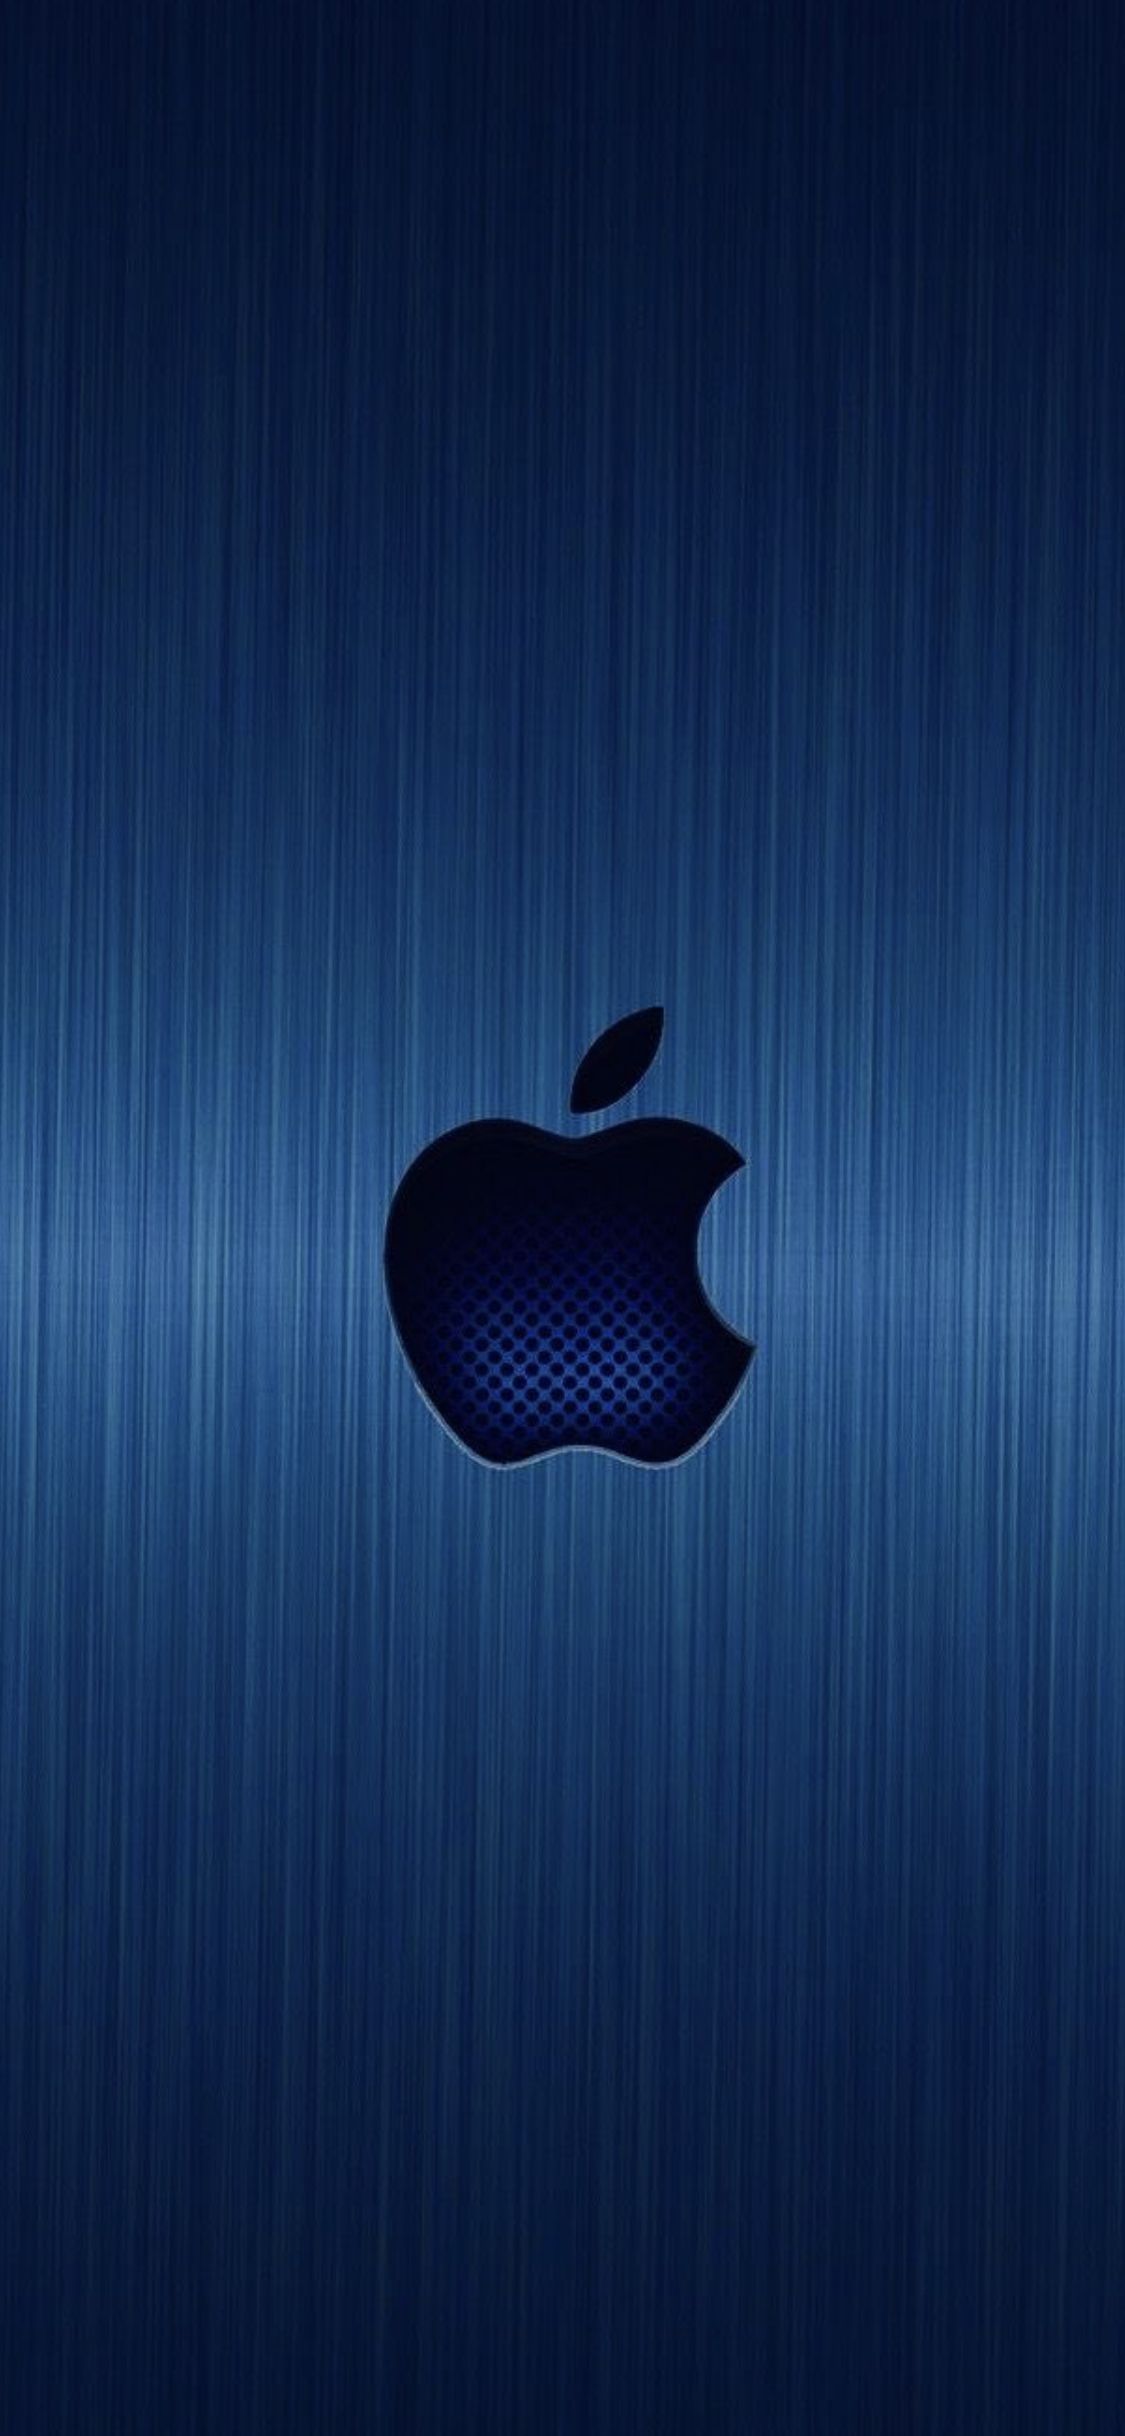 Logo de apple ideas. apple wallpaper, apple wallpaper iphone, apple logo wallpaper